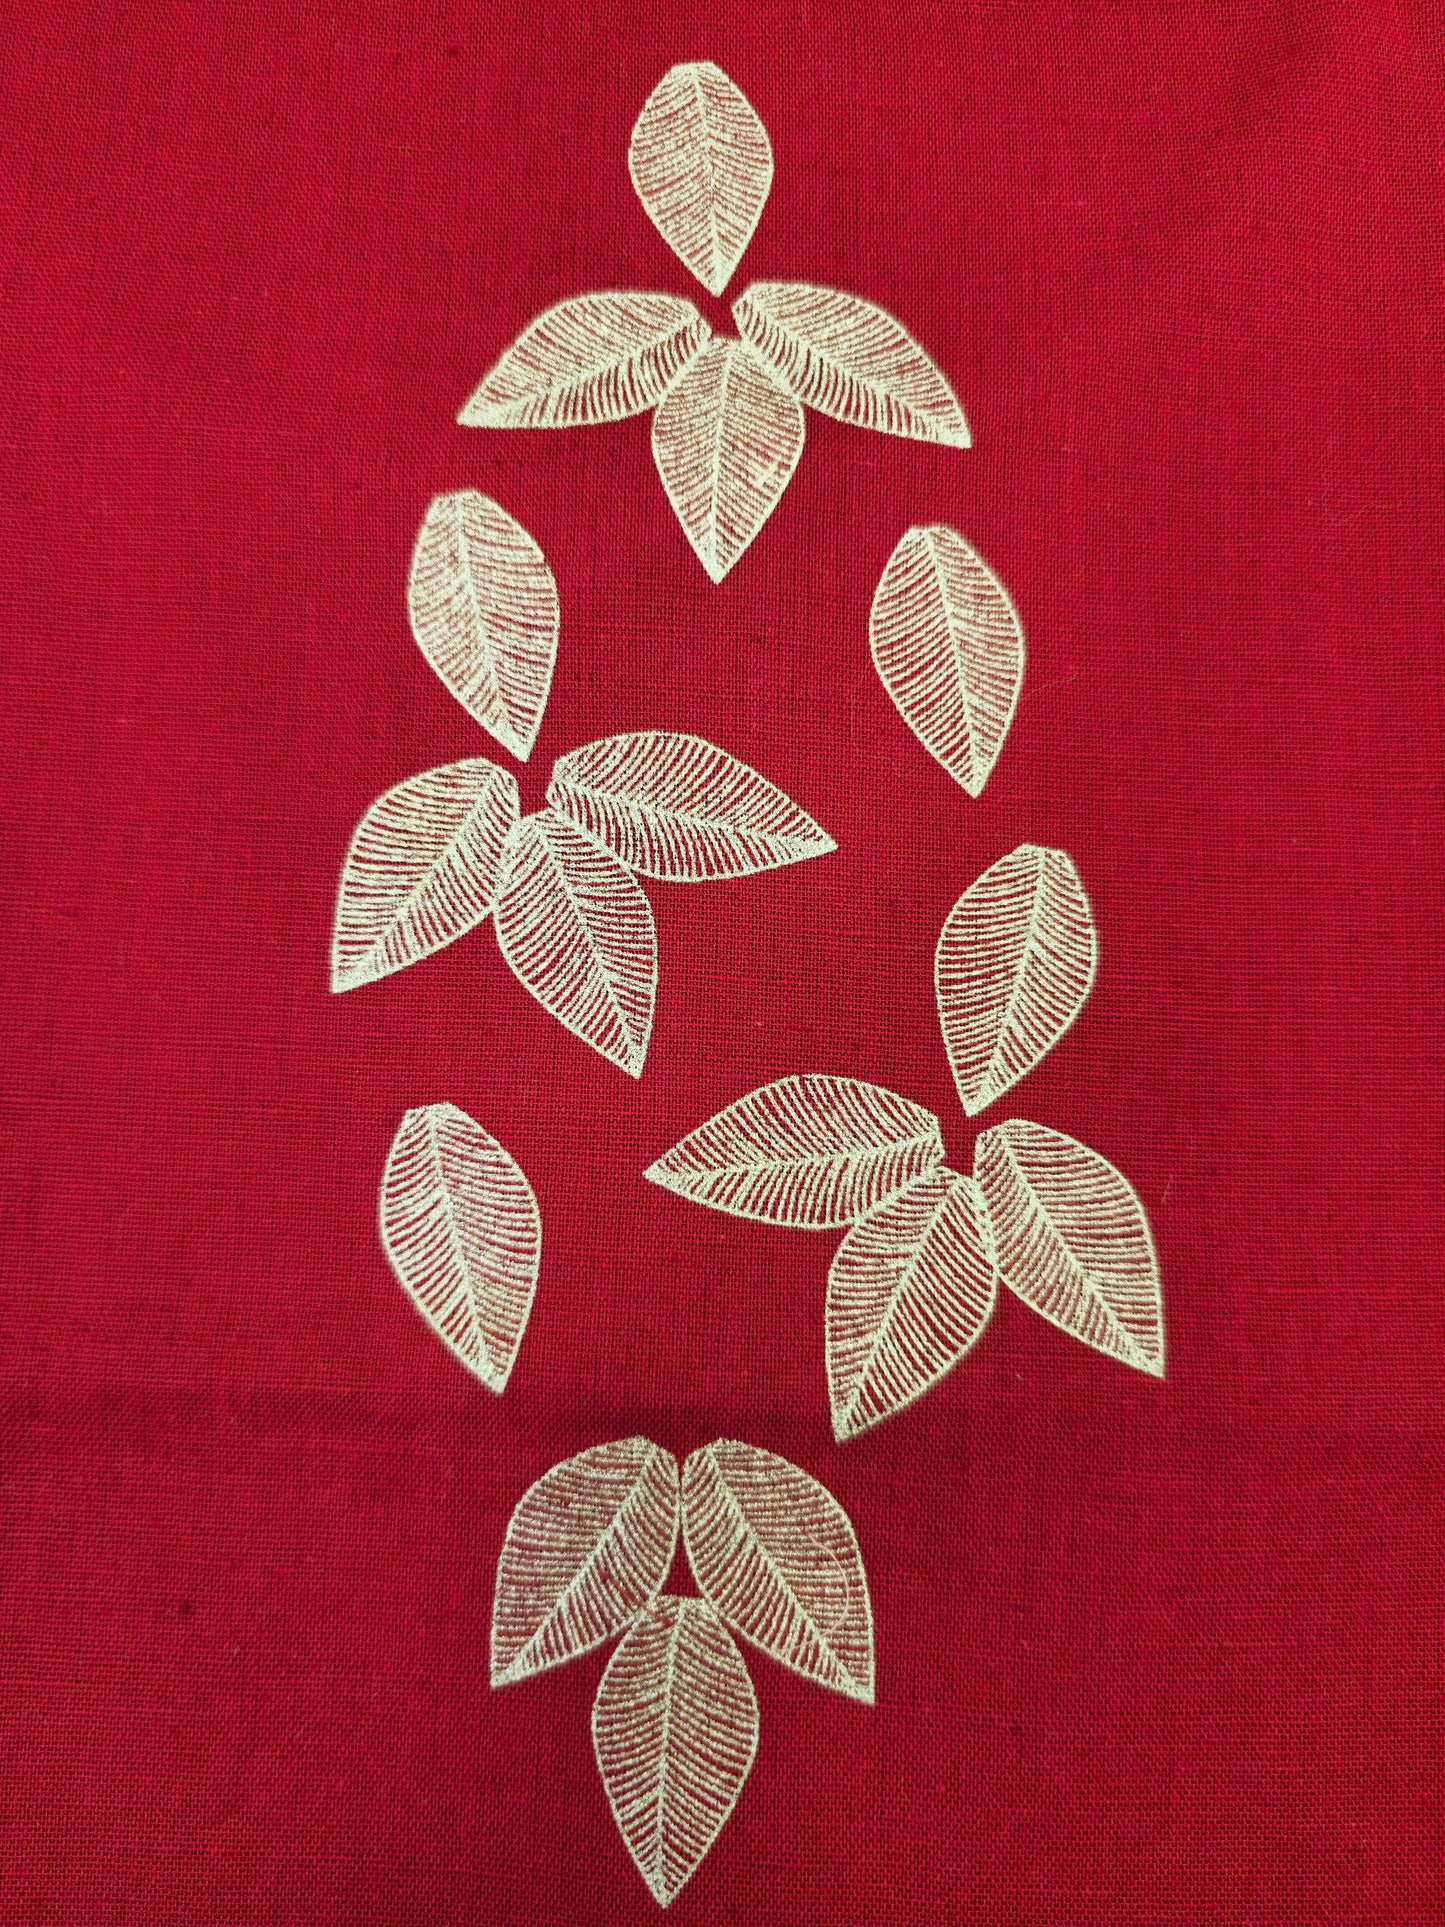 Aabandh's Sleevless Top - Parn (Cotton Linen)